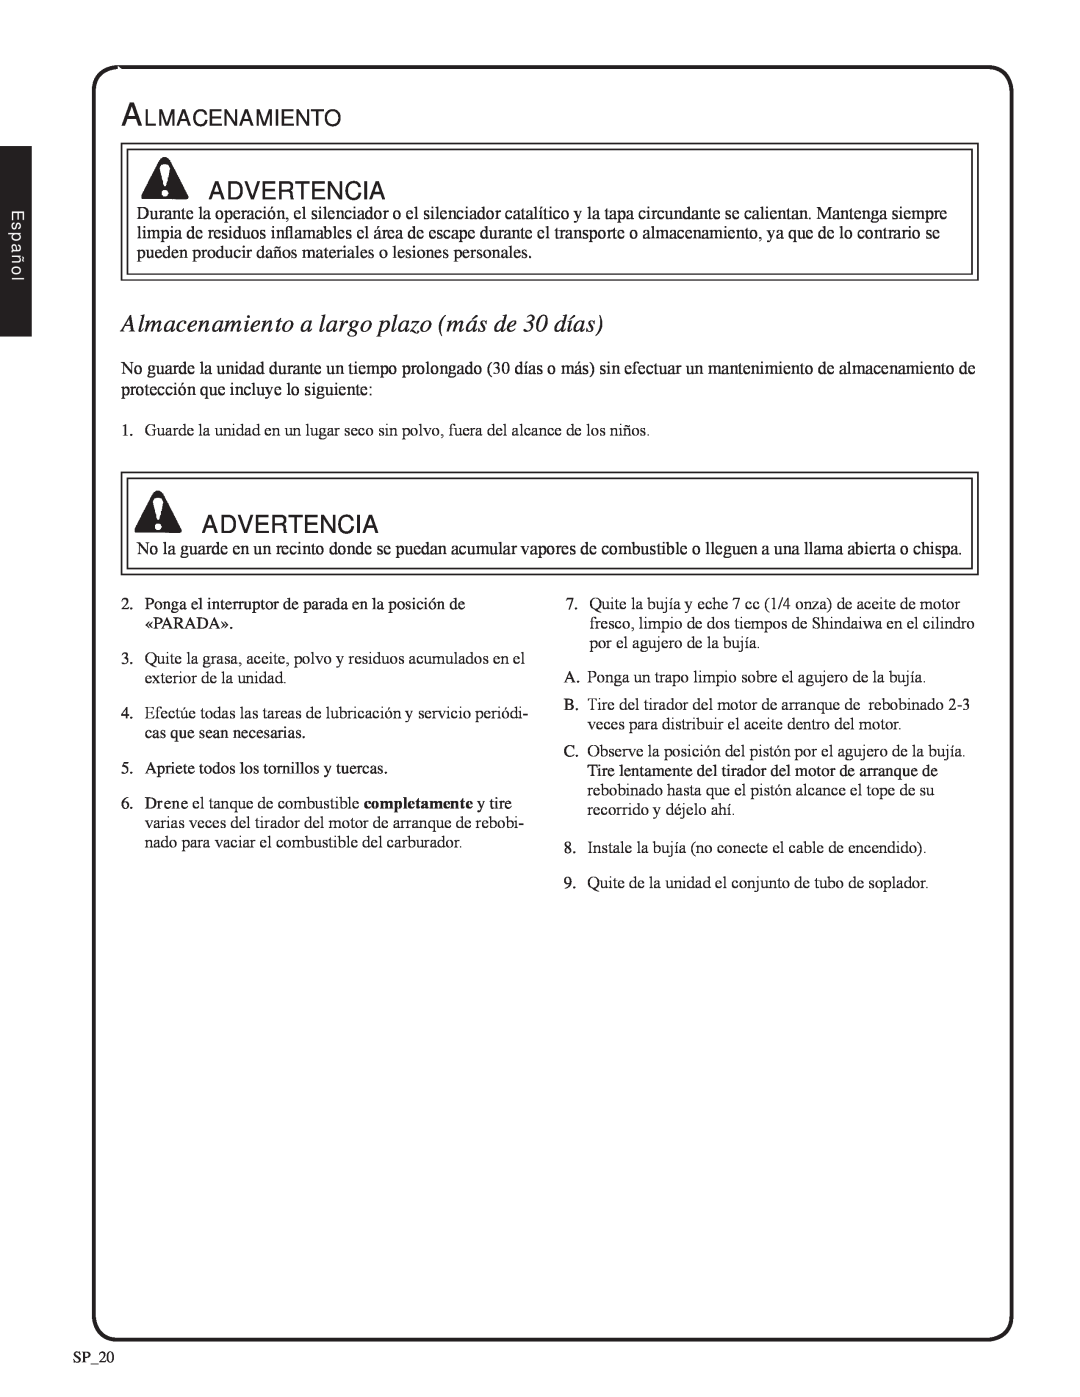 Shindaiwa EB212, 82051 manual Almacenamiento a largo plazo más de 30 días, advertencia, Español 